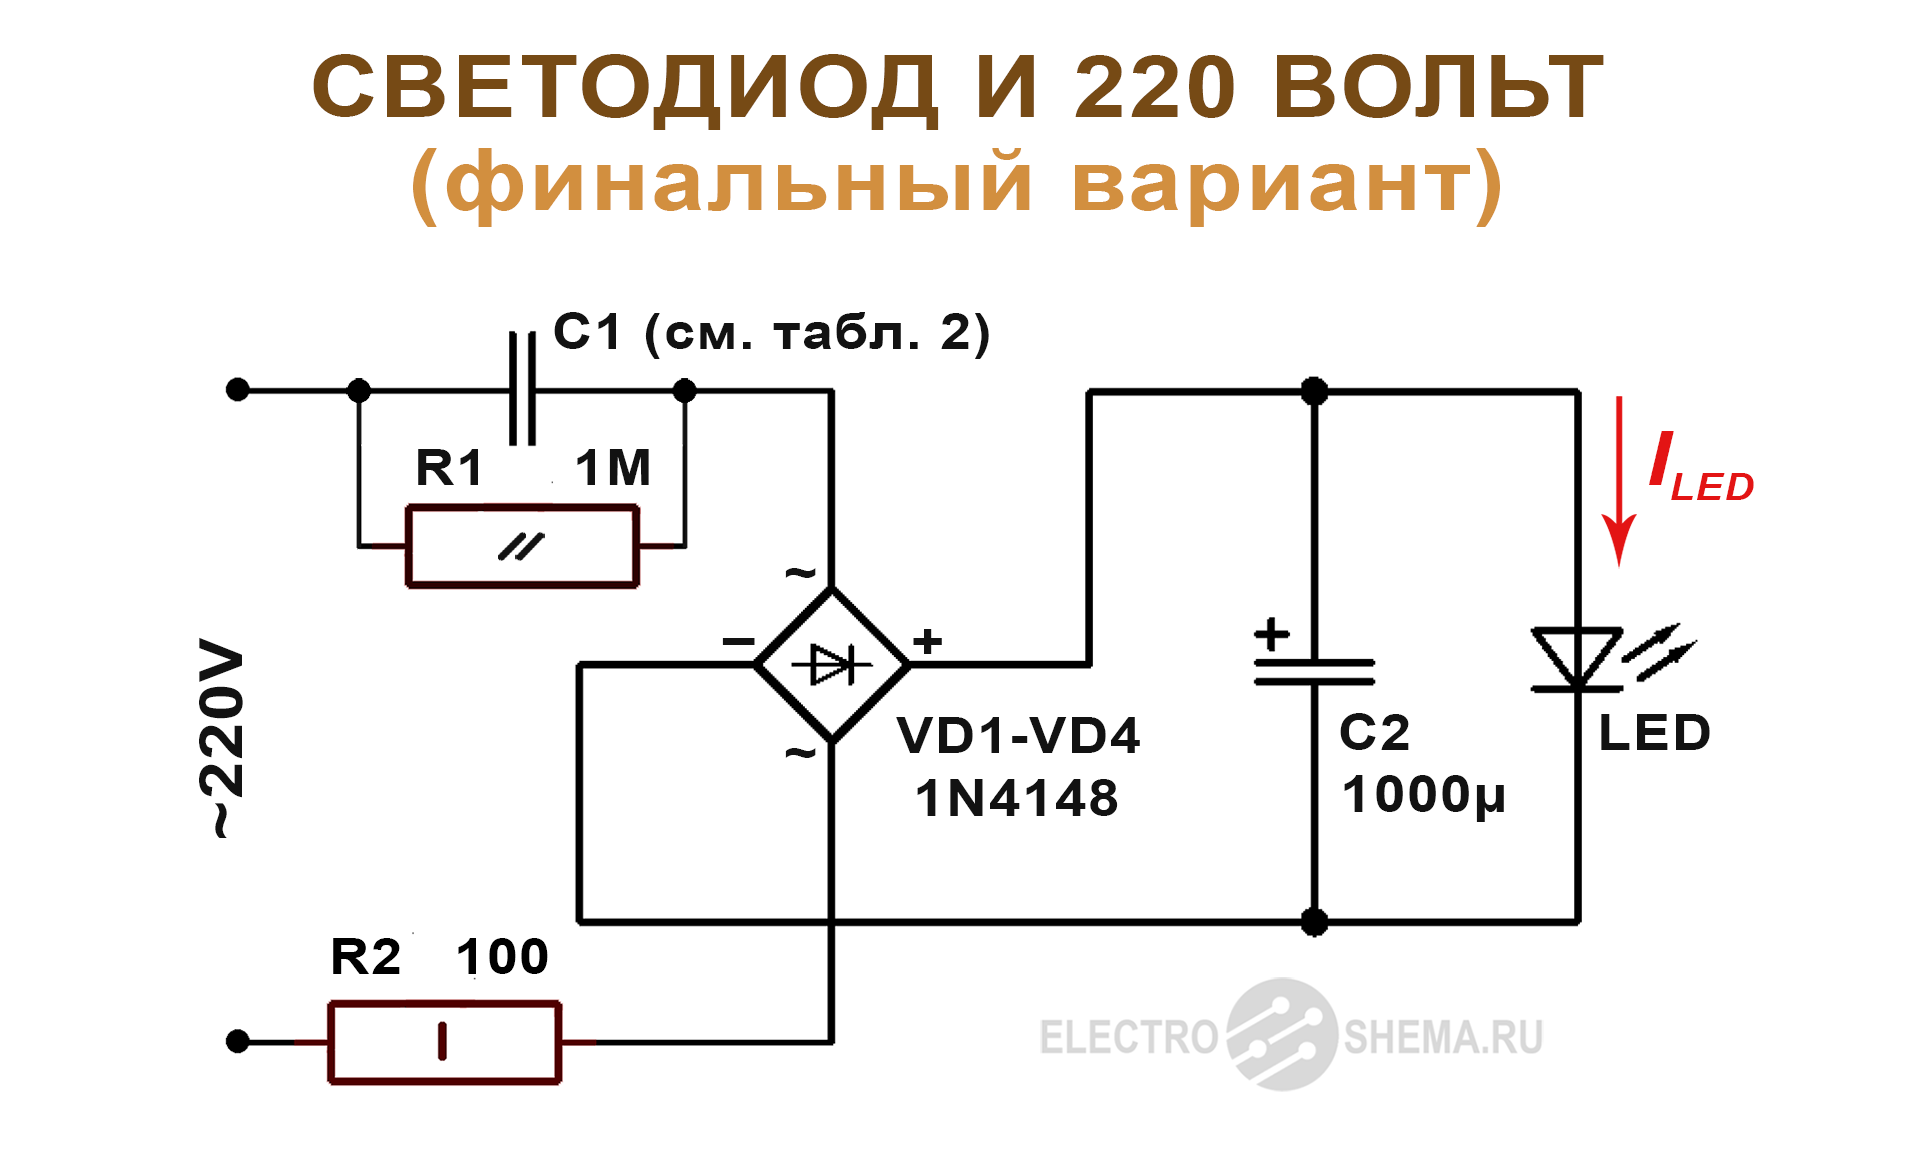 Схема включения светодиода в 220 вольт с балластным гасящим конденсатором